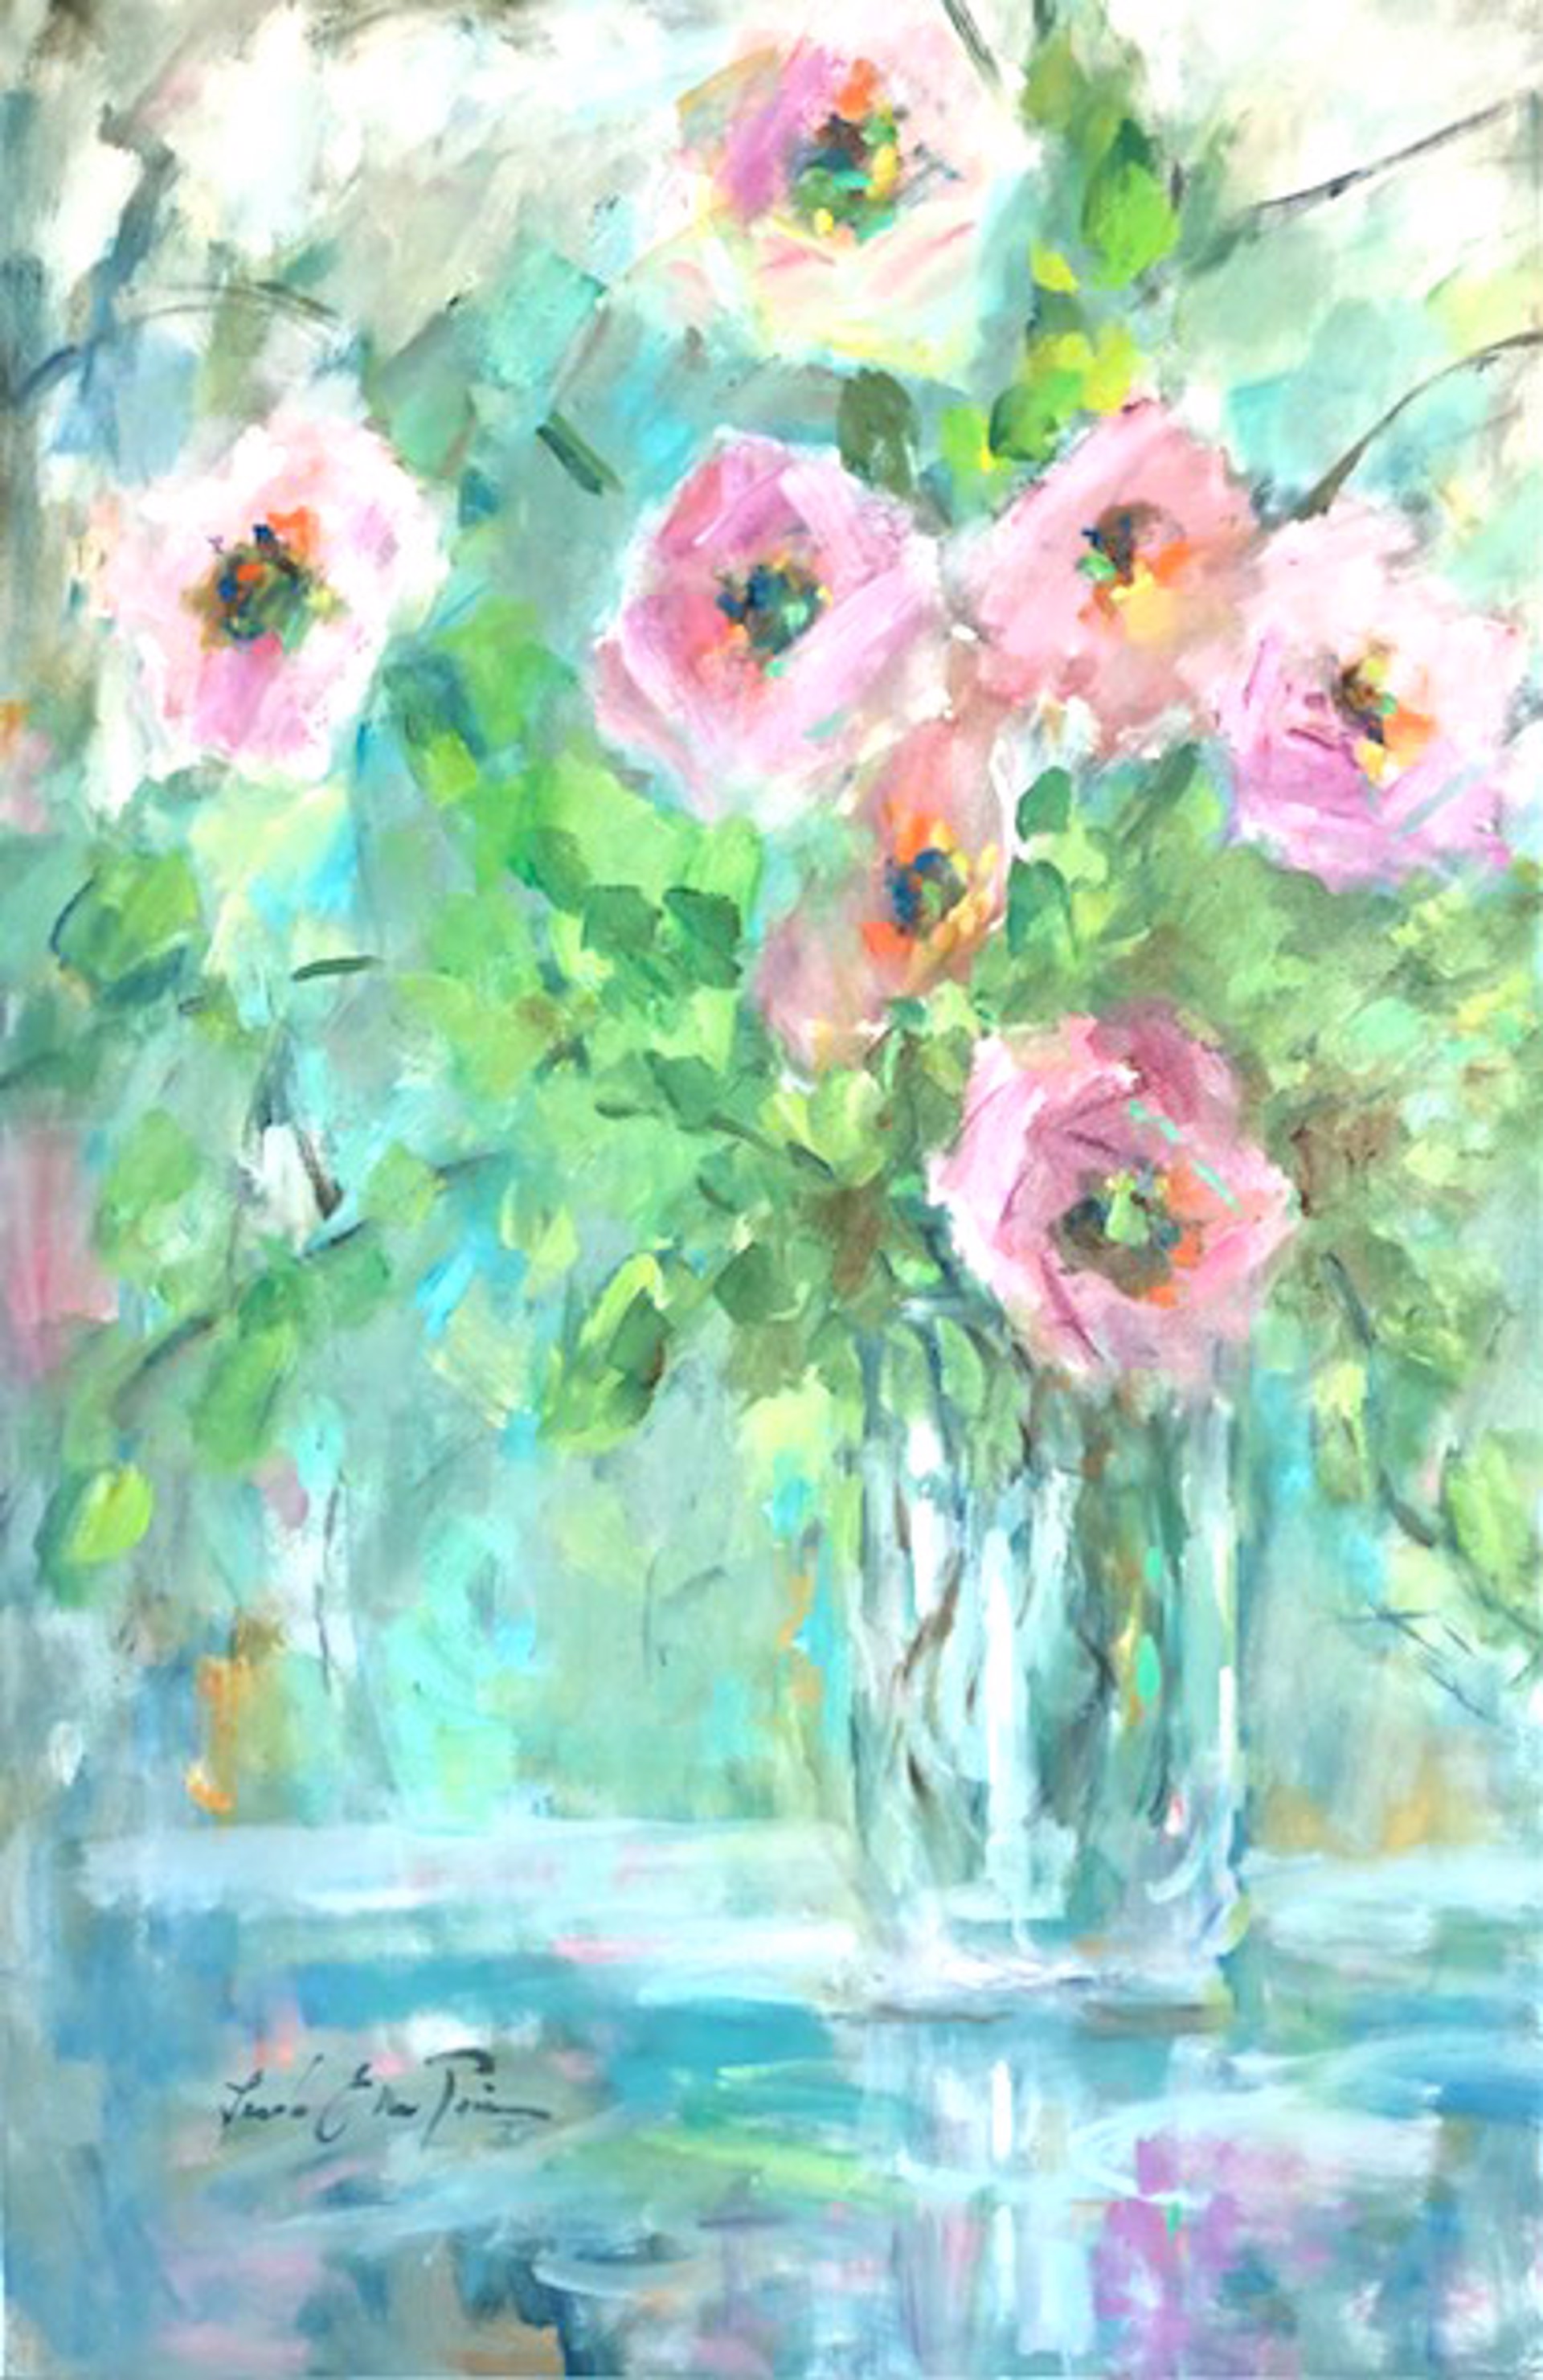 Flowers for Missy by Linda Ellen Price